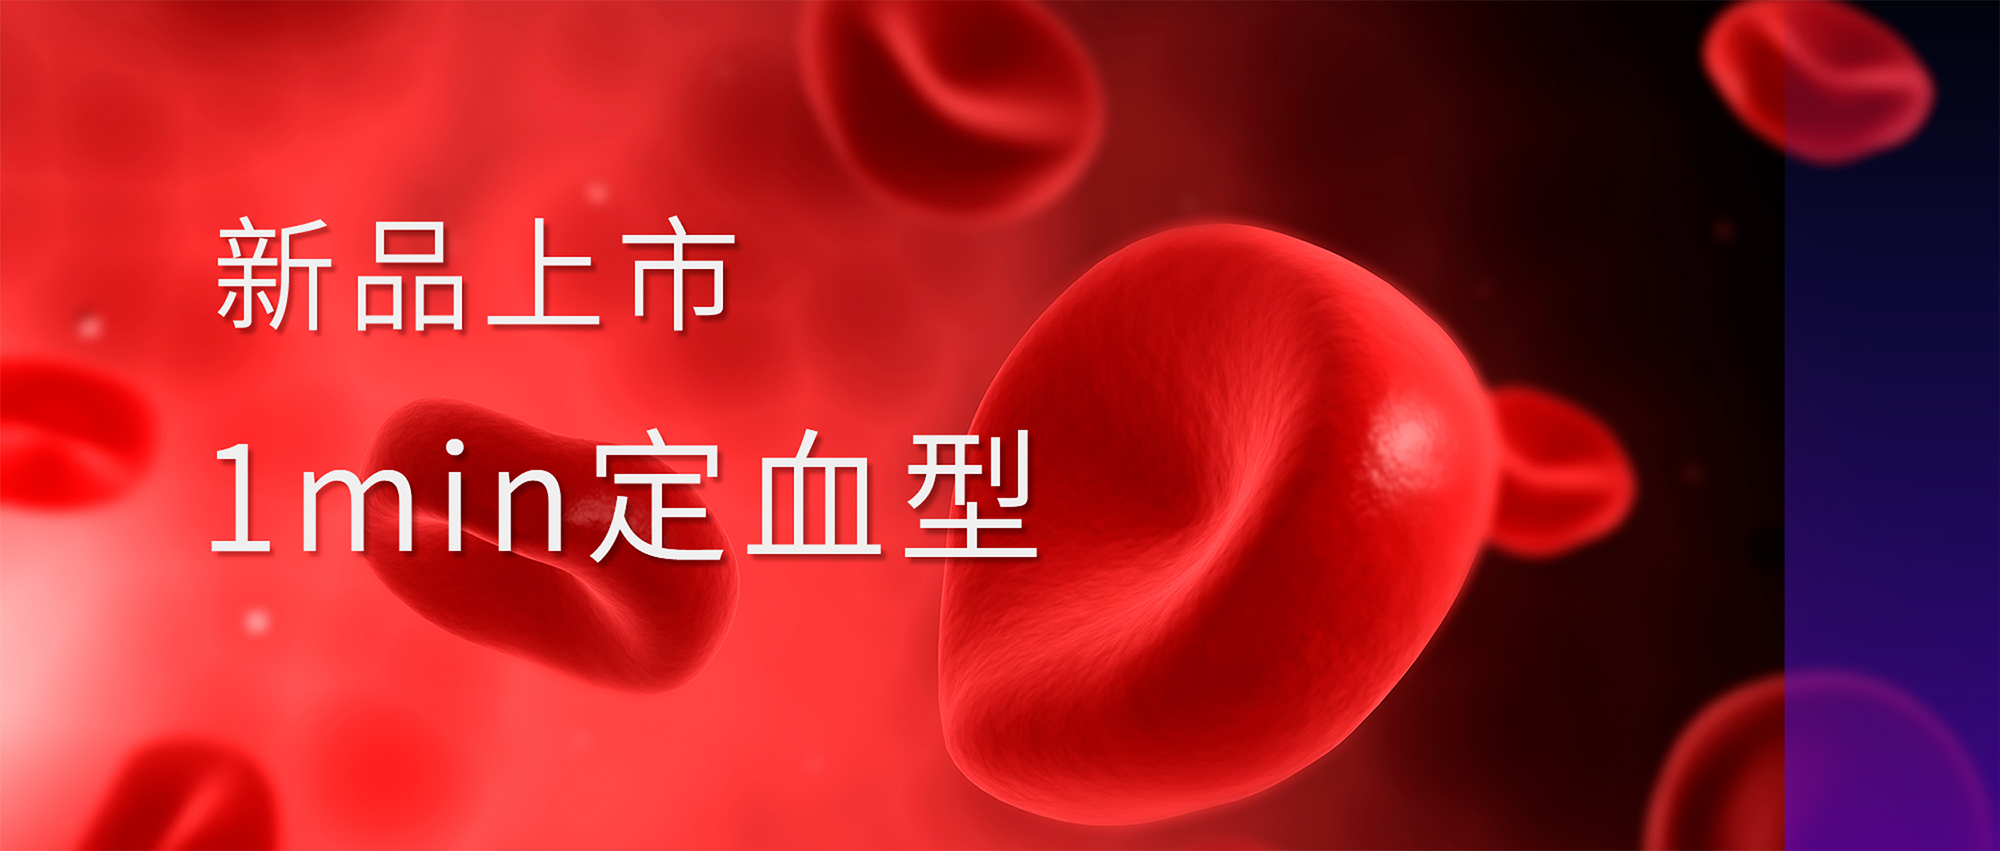 新品上市丨丽珠血型检测系列试剂盒喜获注册证